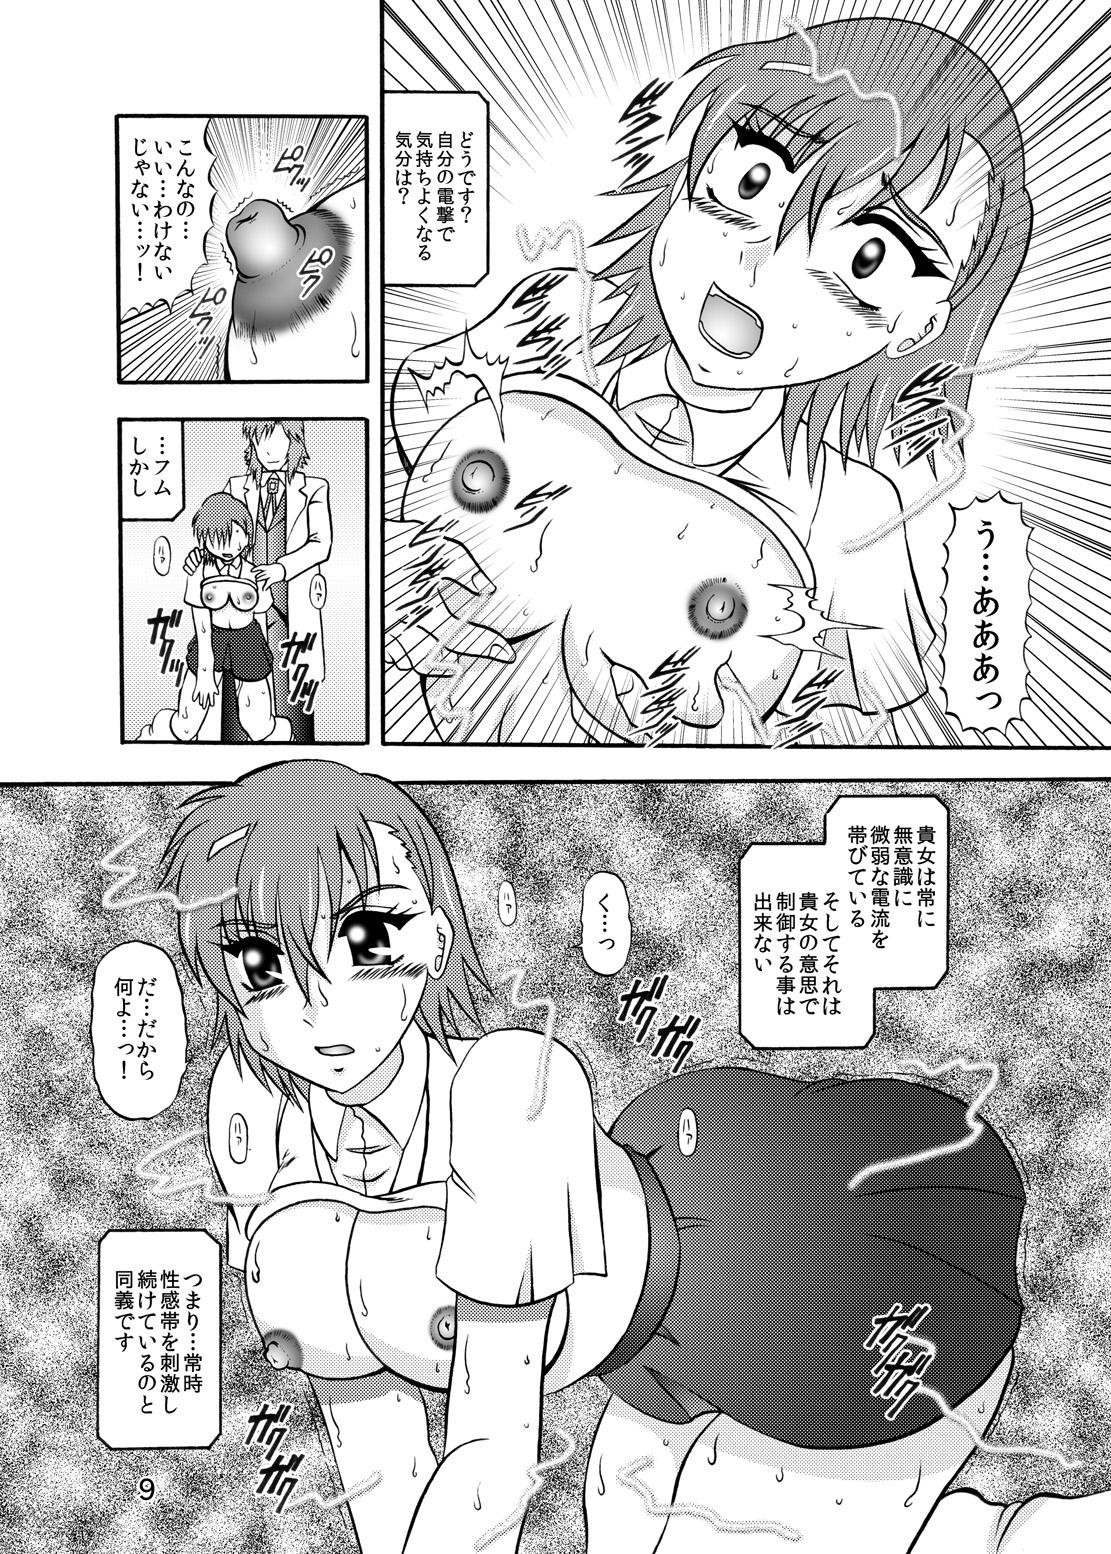 Funny Inyoku Kaizou: Misaka Mikoto - Toaru kagaku no railgun Fat Pussy - Page 7